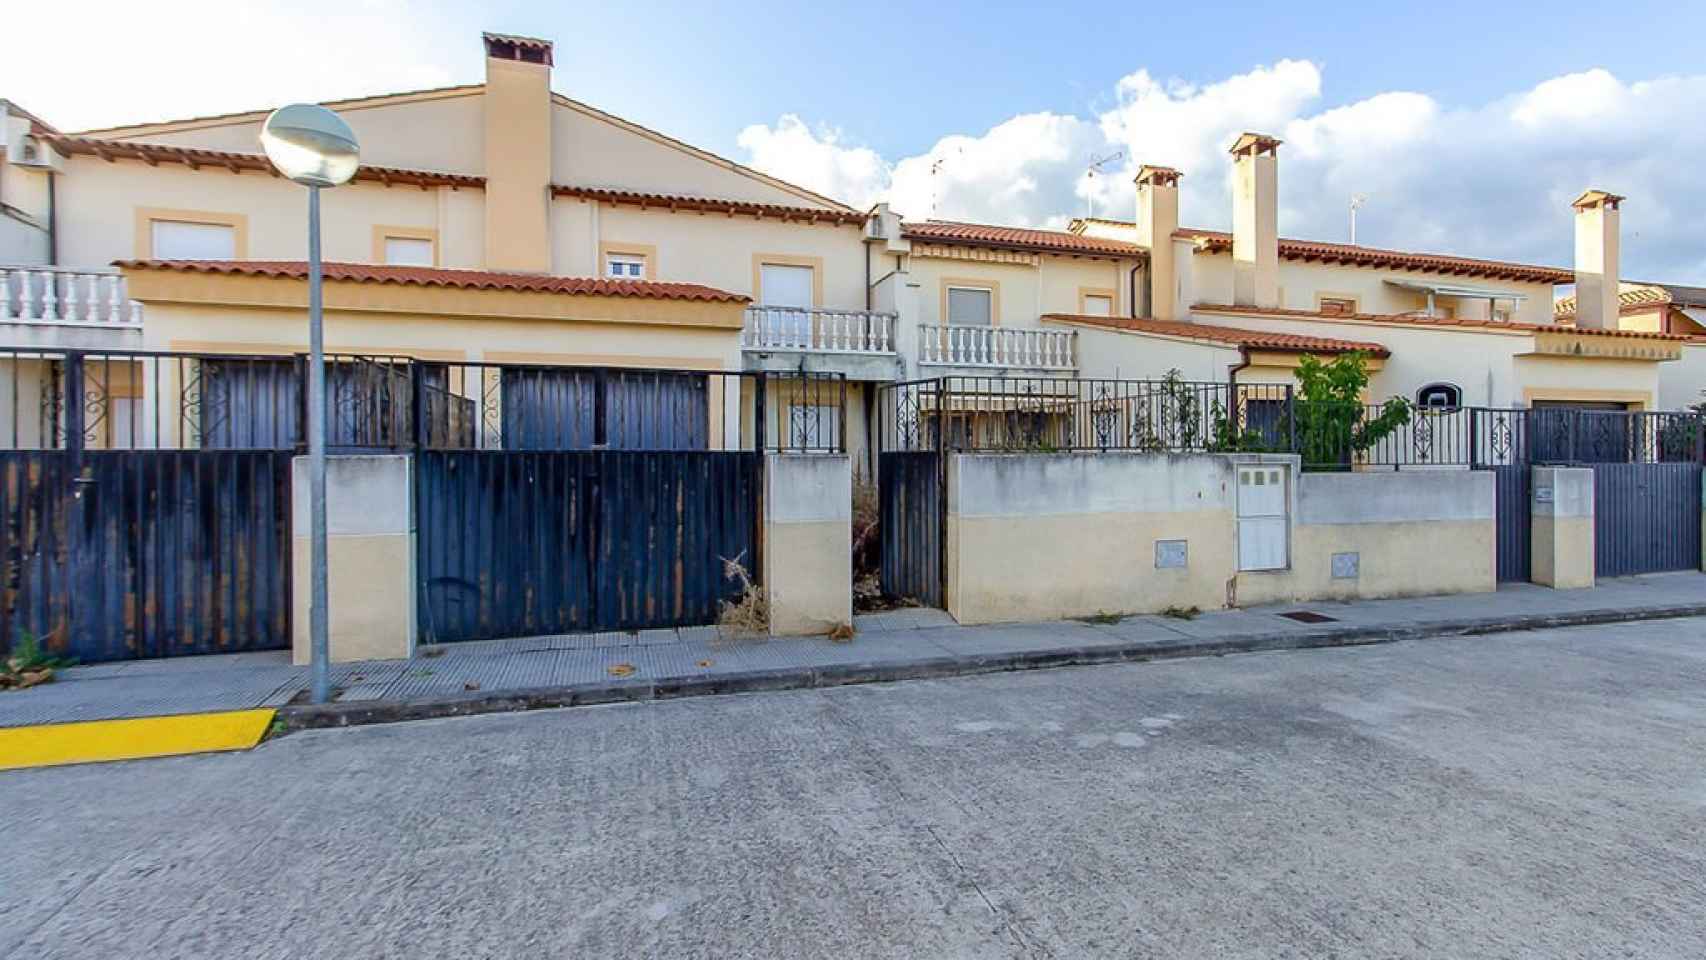 Robusto Buscar a tientas Faringe Ponen a la venta en Castilla-La Mancha 160 viviendas por menos de 310 euros  al mes